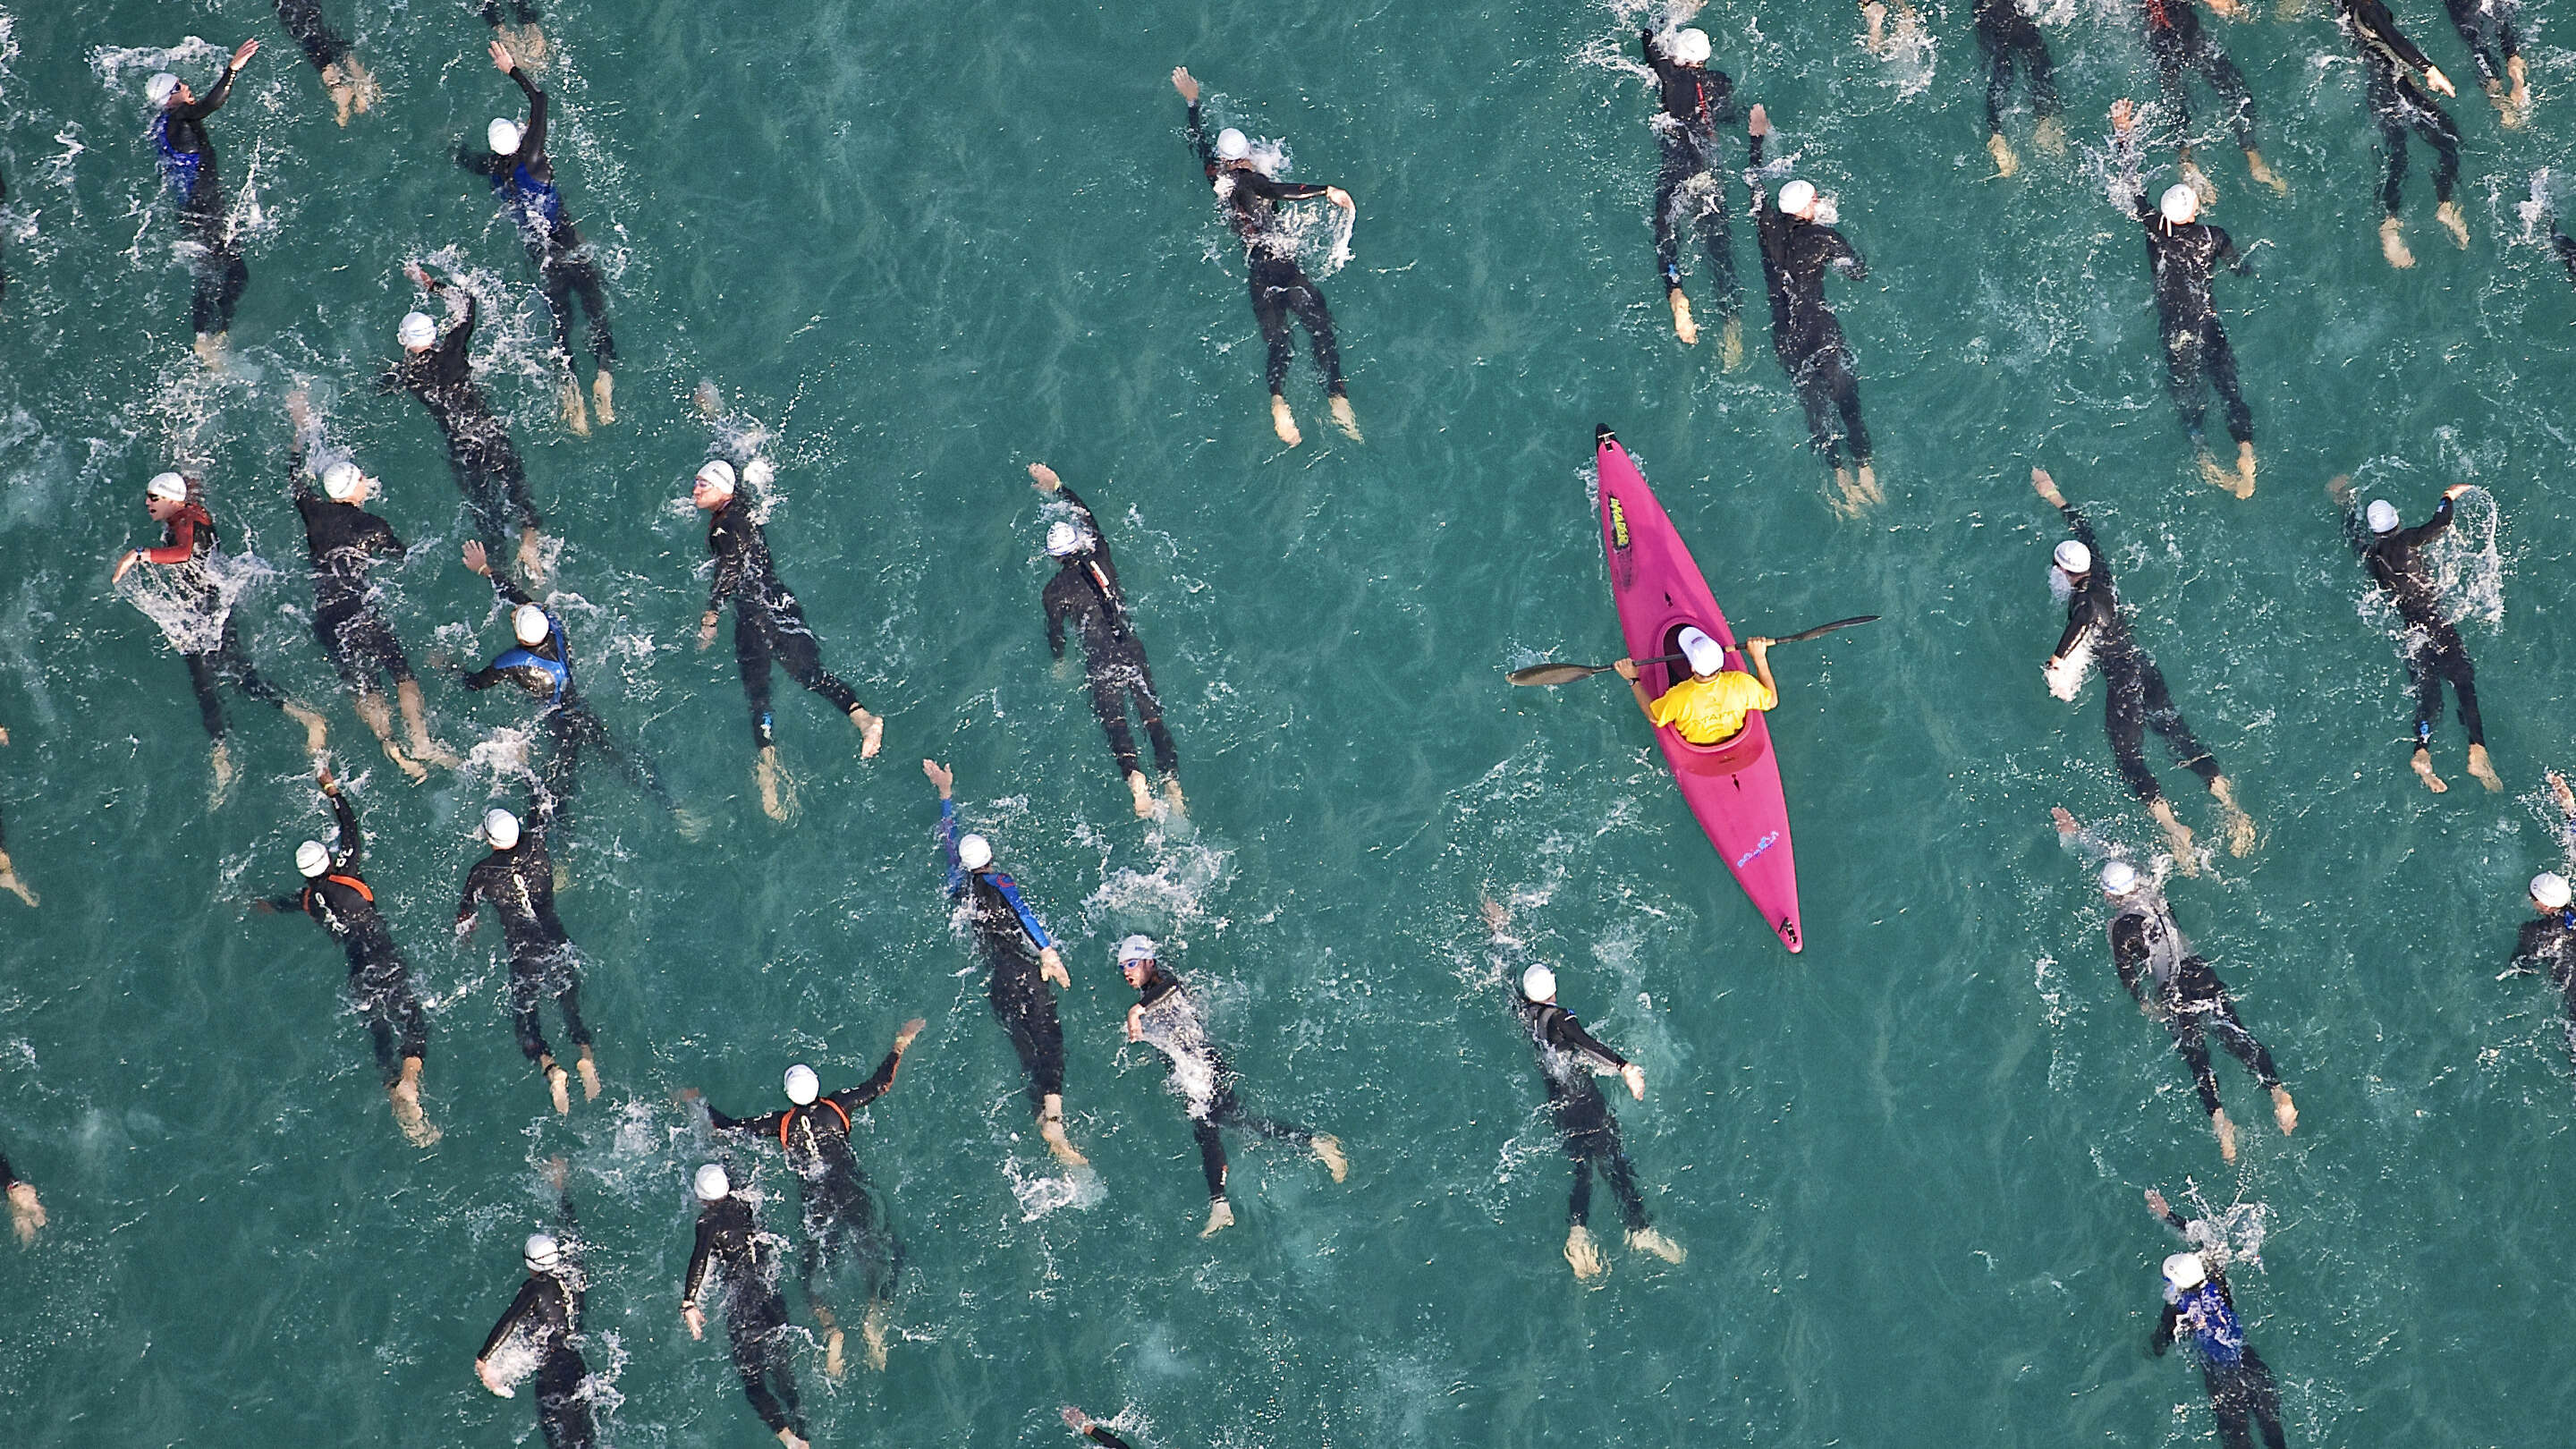 Mengapa Interelectronix sekelompok orang di kayak di dalam air